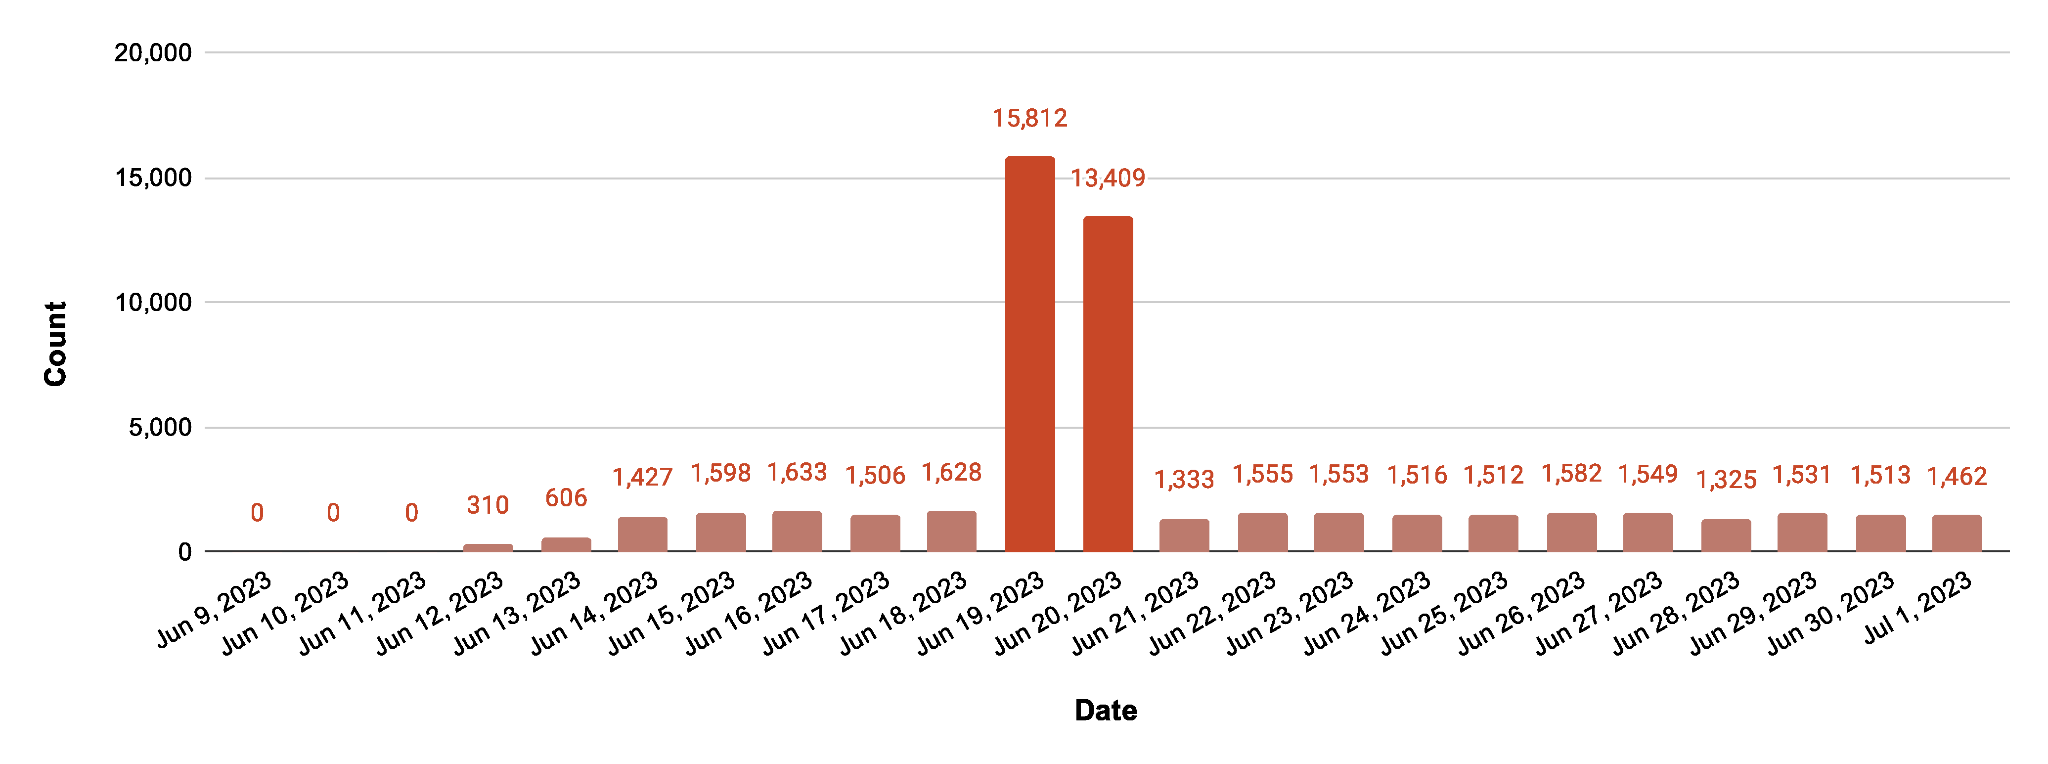 画像 3 は、Zyxel の脆弱性にからんでスキャンされた一意なターゲットの数を示した棒グラフです。このグラフは 2023 年 6 月 9 日に始まり、2023 年 7 月 1 日に終わっています。大多数の日は平均約 1500 件を記録しています。2 つ大きなピークがあり、それらは 2023 年 6 月 19 日と 2023 年 6 月 20 日のものです。これらの日付については、15,812 件、13,409 件をそれぞれ記録しています。 